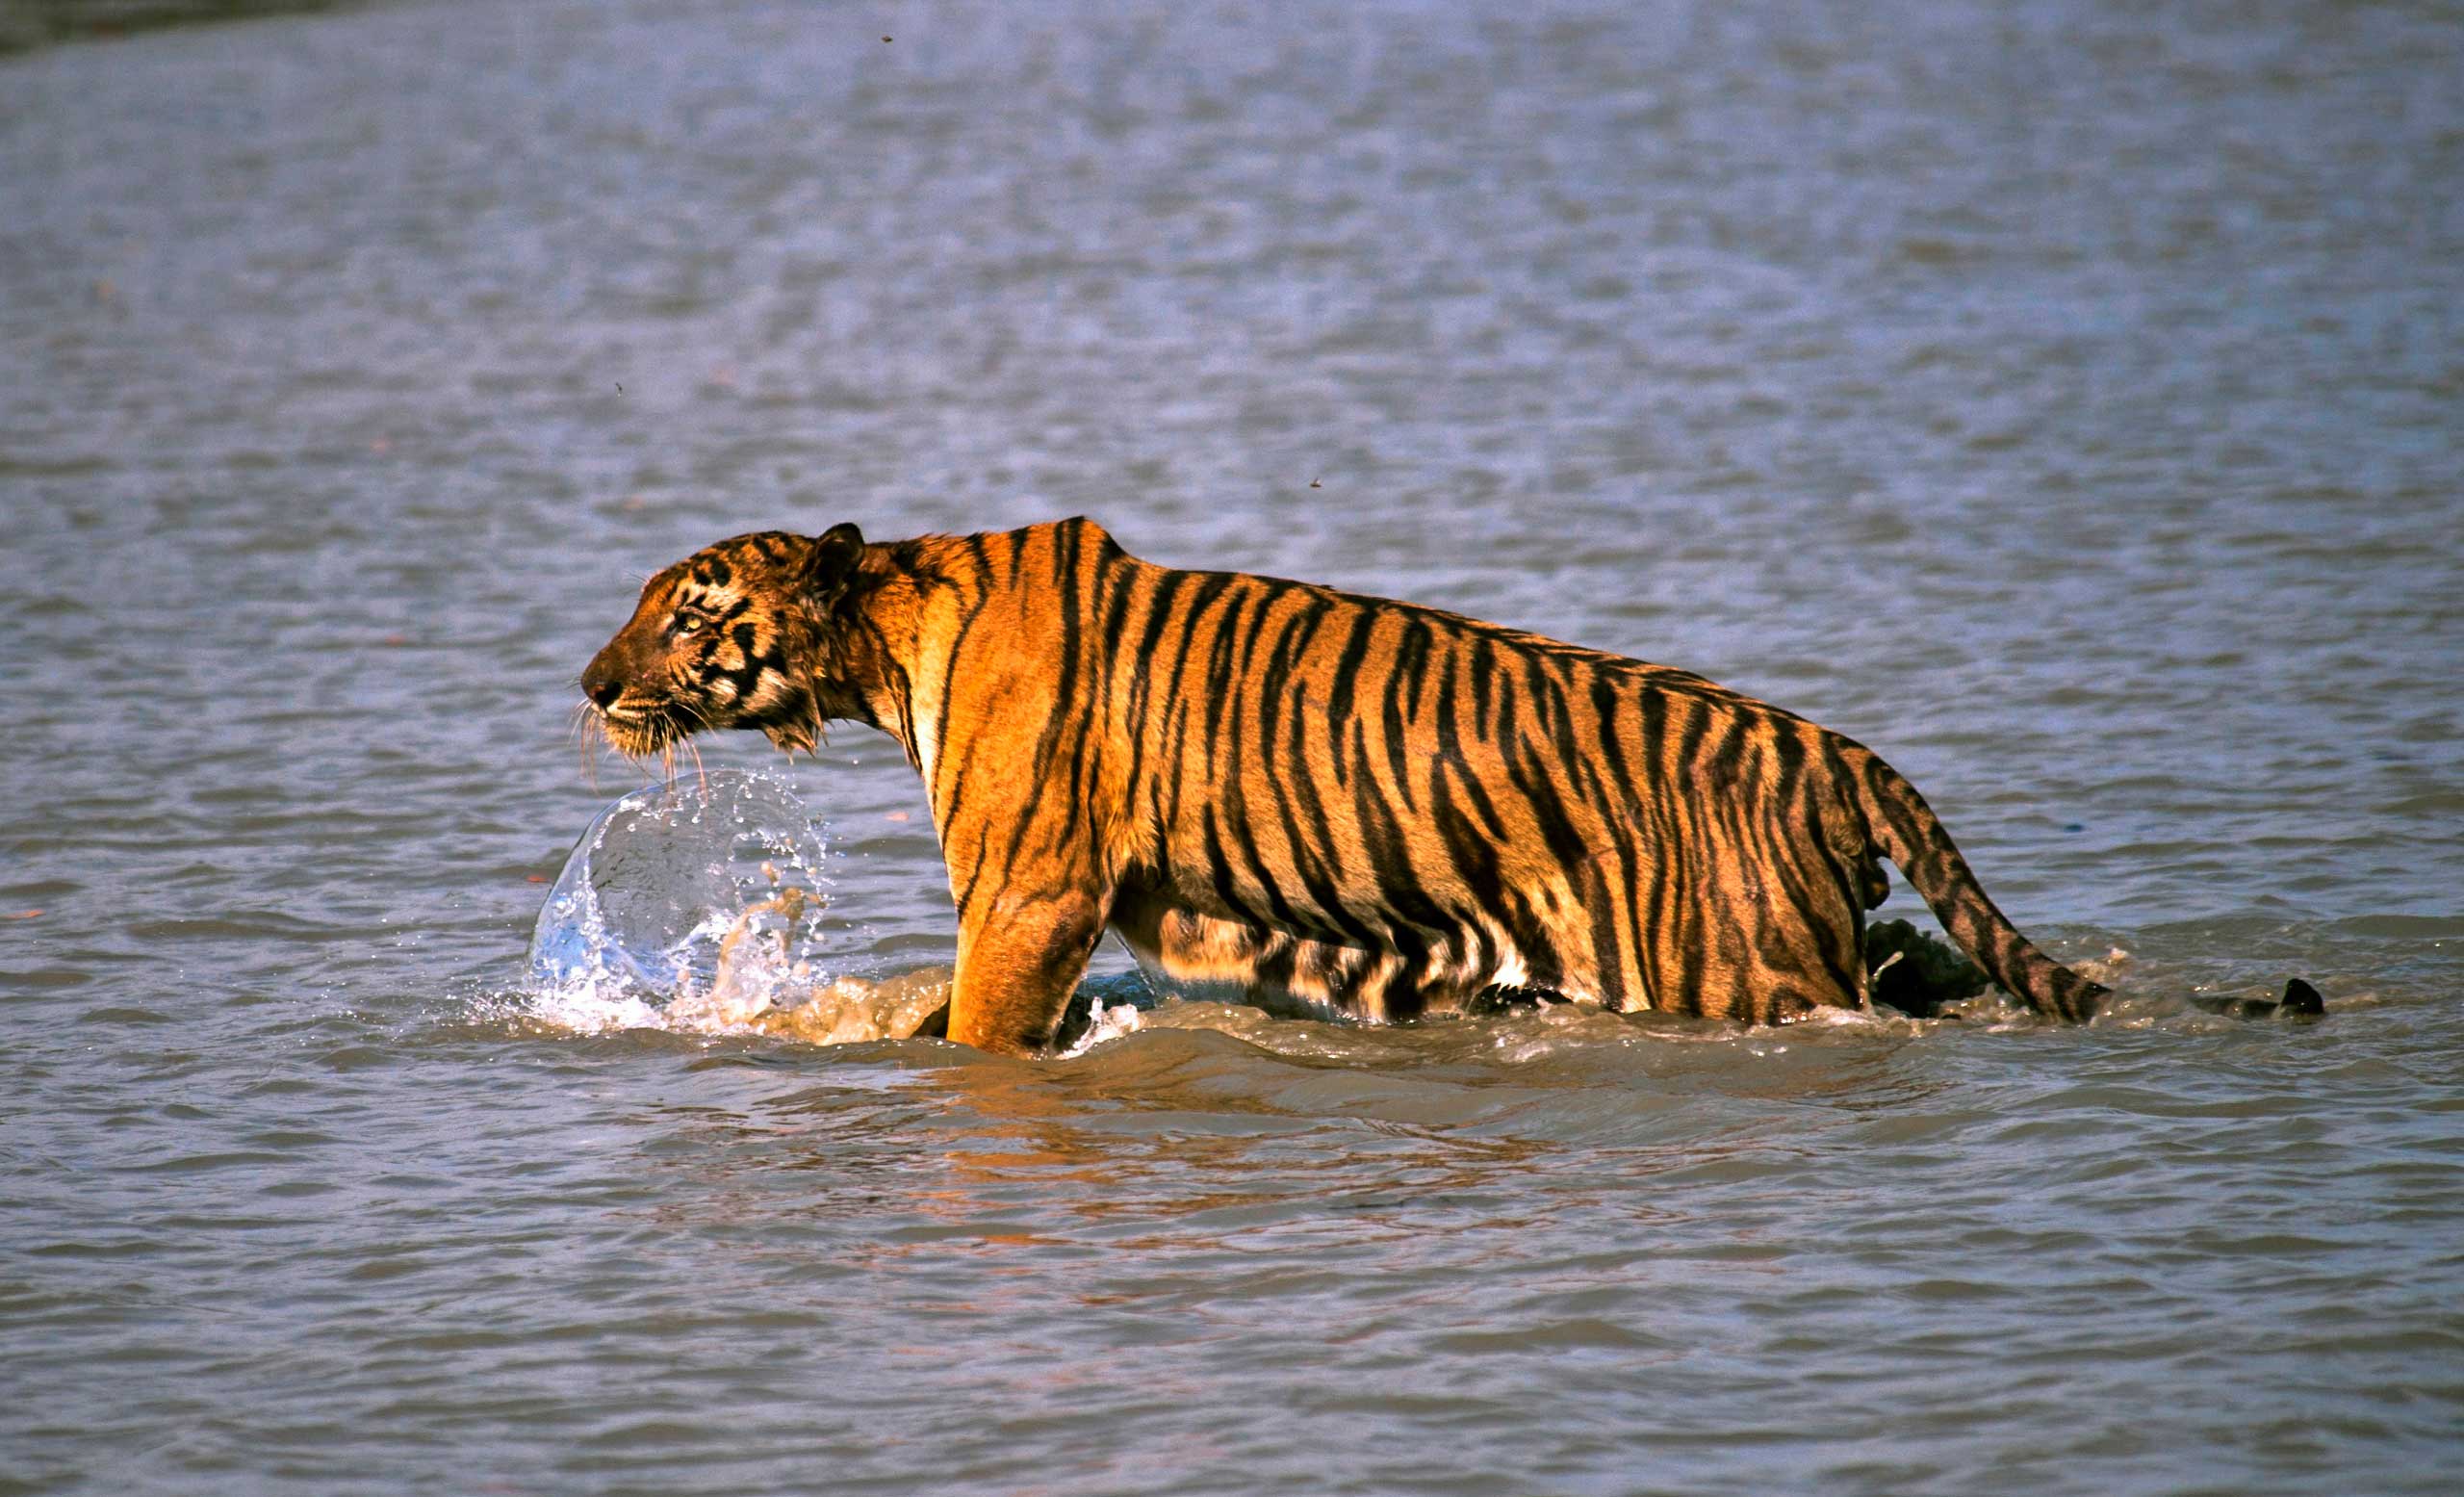 India Tigers Census